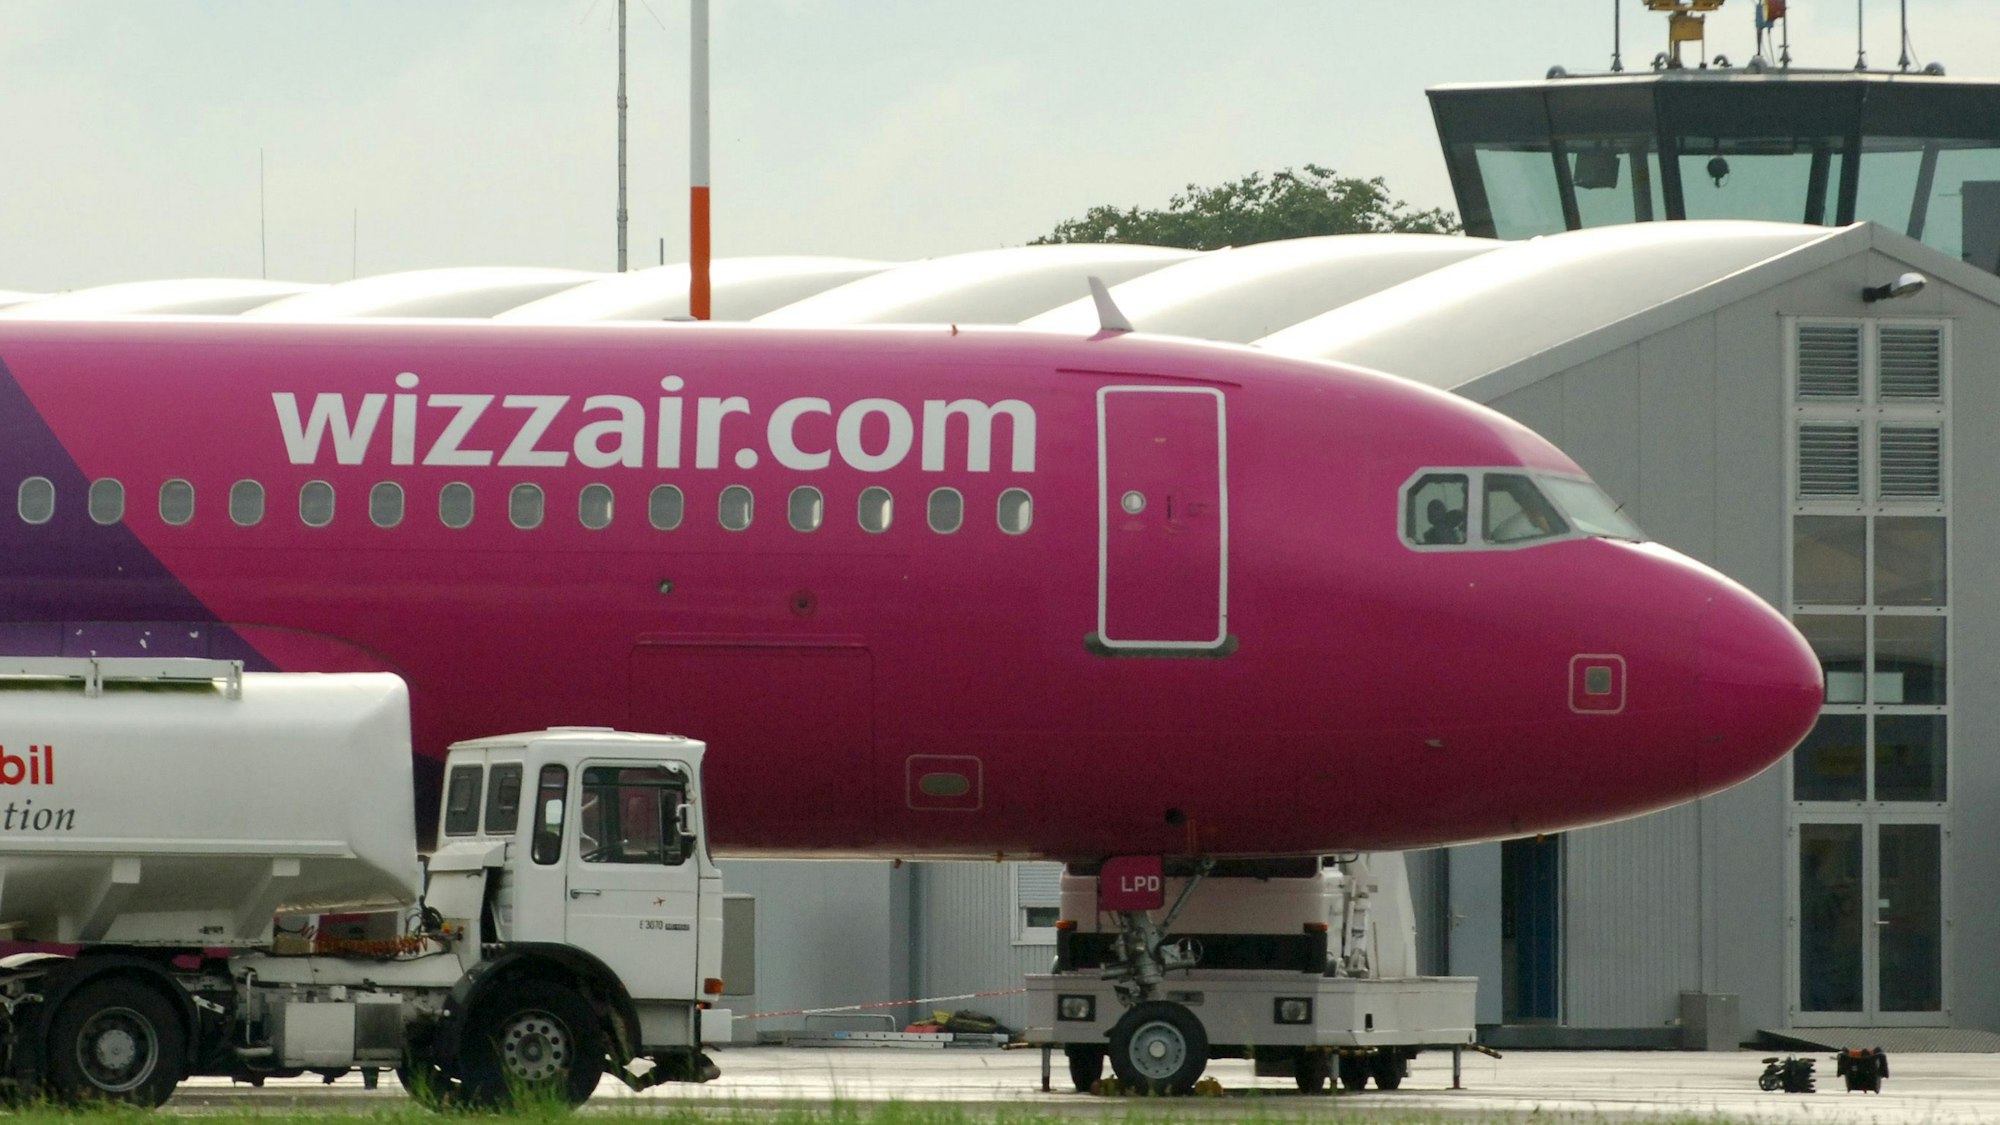 Ein Flugzeug der ungarischen Fluglinie Wizzair steht auf dem dem Flughafen in Lübeck. Zu sehen ist das markante Magenta auf einem Airbus, in dem die Flugzeuge der ungarischen Airline gestrichen sind. (Symbolbild)